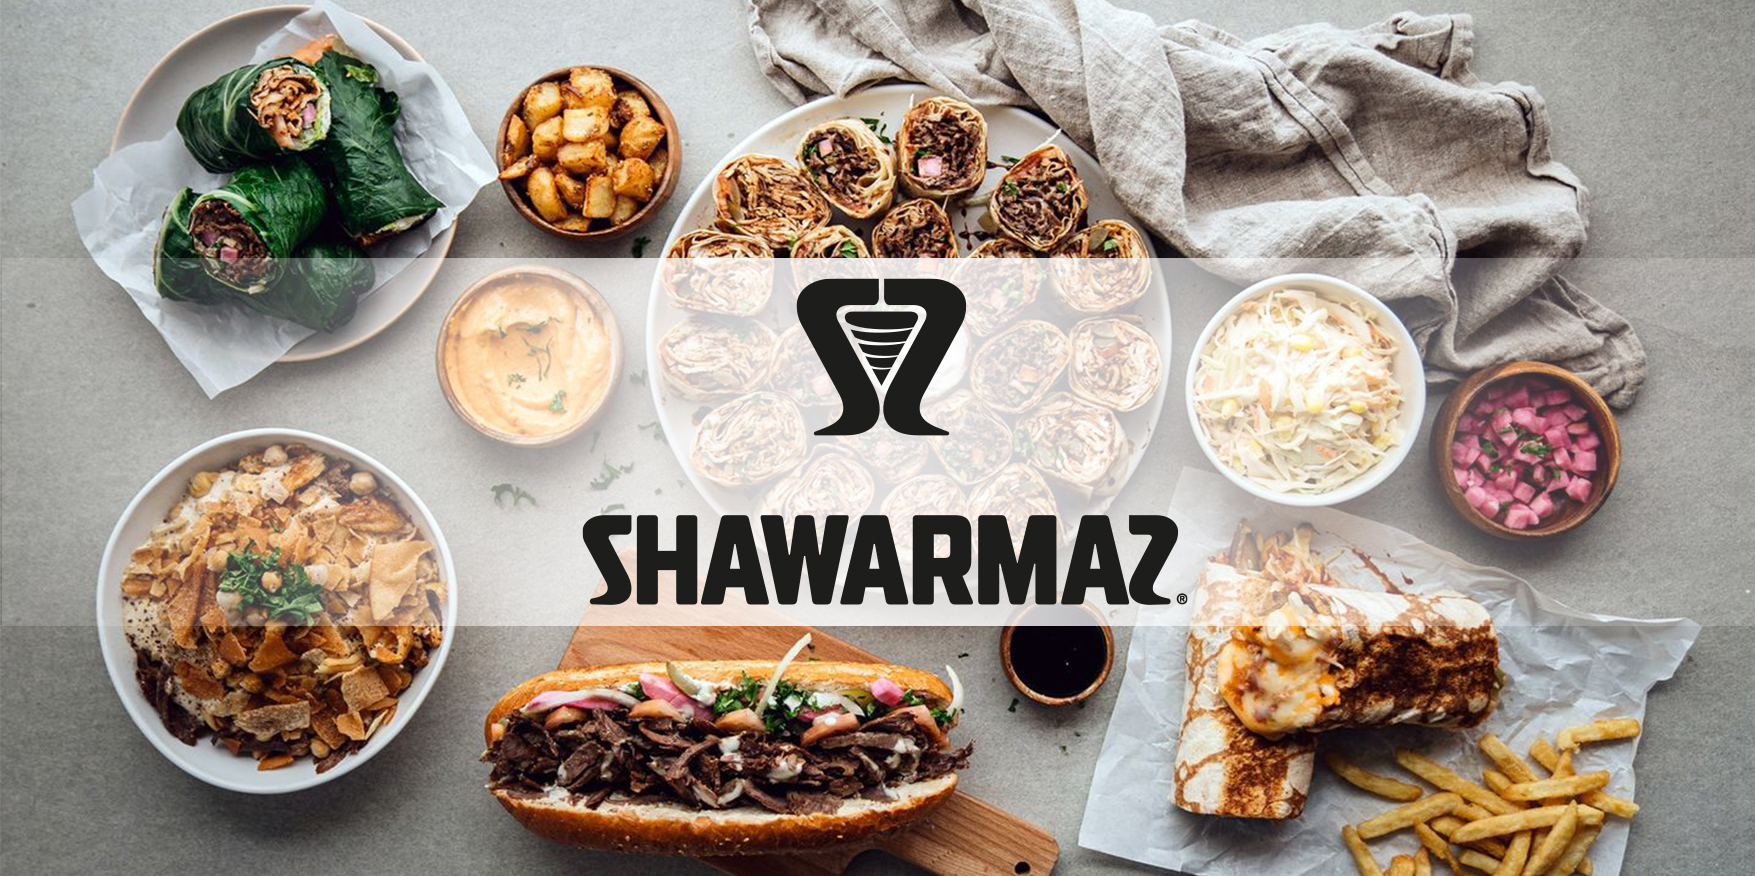 Le restaurant Shawarmaz est maintenant ouvert